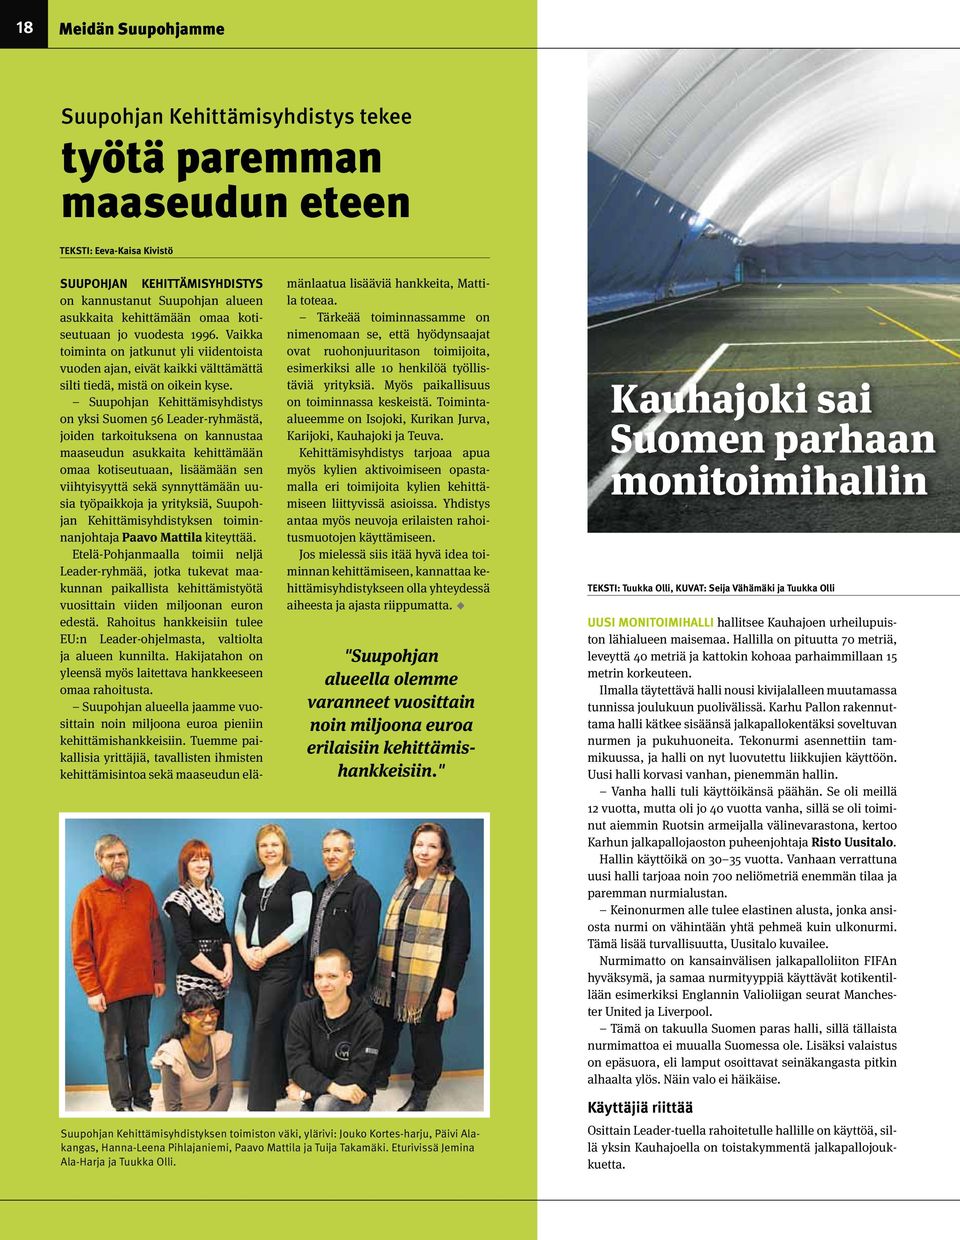 Suupohjan Kehittämisyhdistys on yksi Suomen 56 Leader-ryhmästä, joiden tarkoituksena on kannustaa maaseudun asukkaita kehittämään omaa kotiseutuaan, lisäämään sen viihtyisyyttä sekä synnyttämään